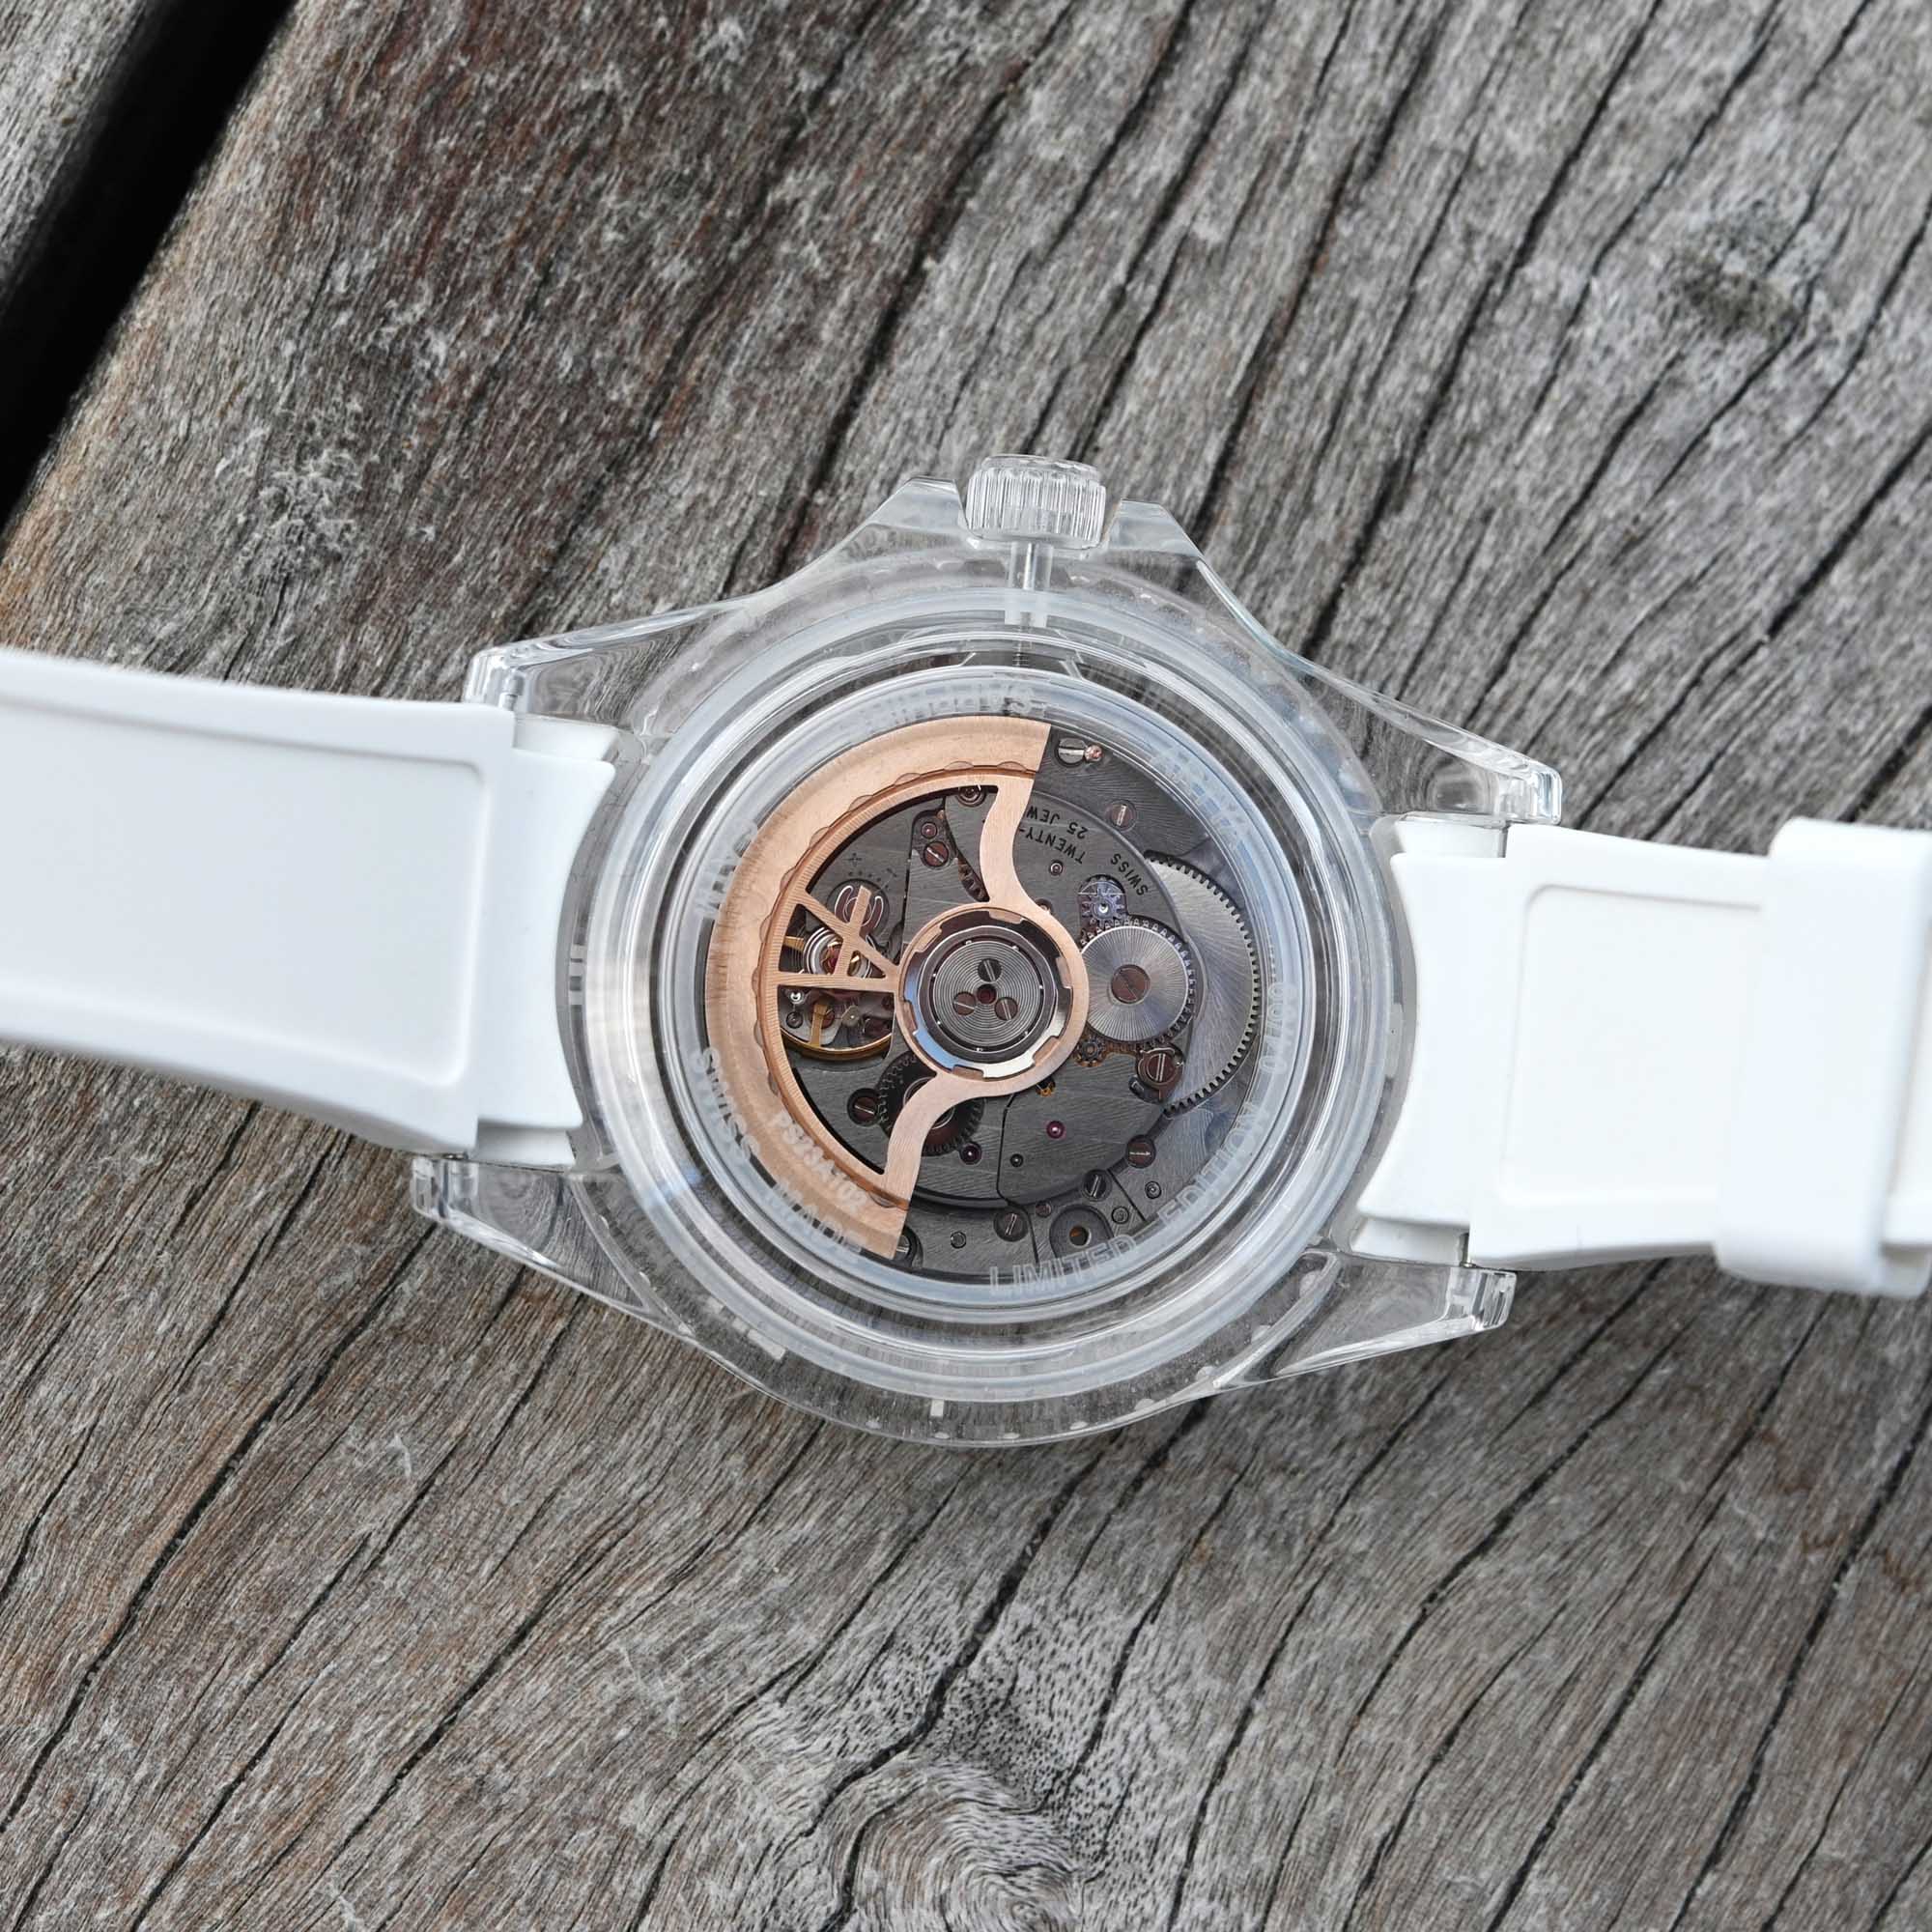 Новинка: спортивные часы ArtyA AquaSaphir с сапфировым стеклом